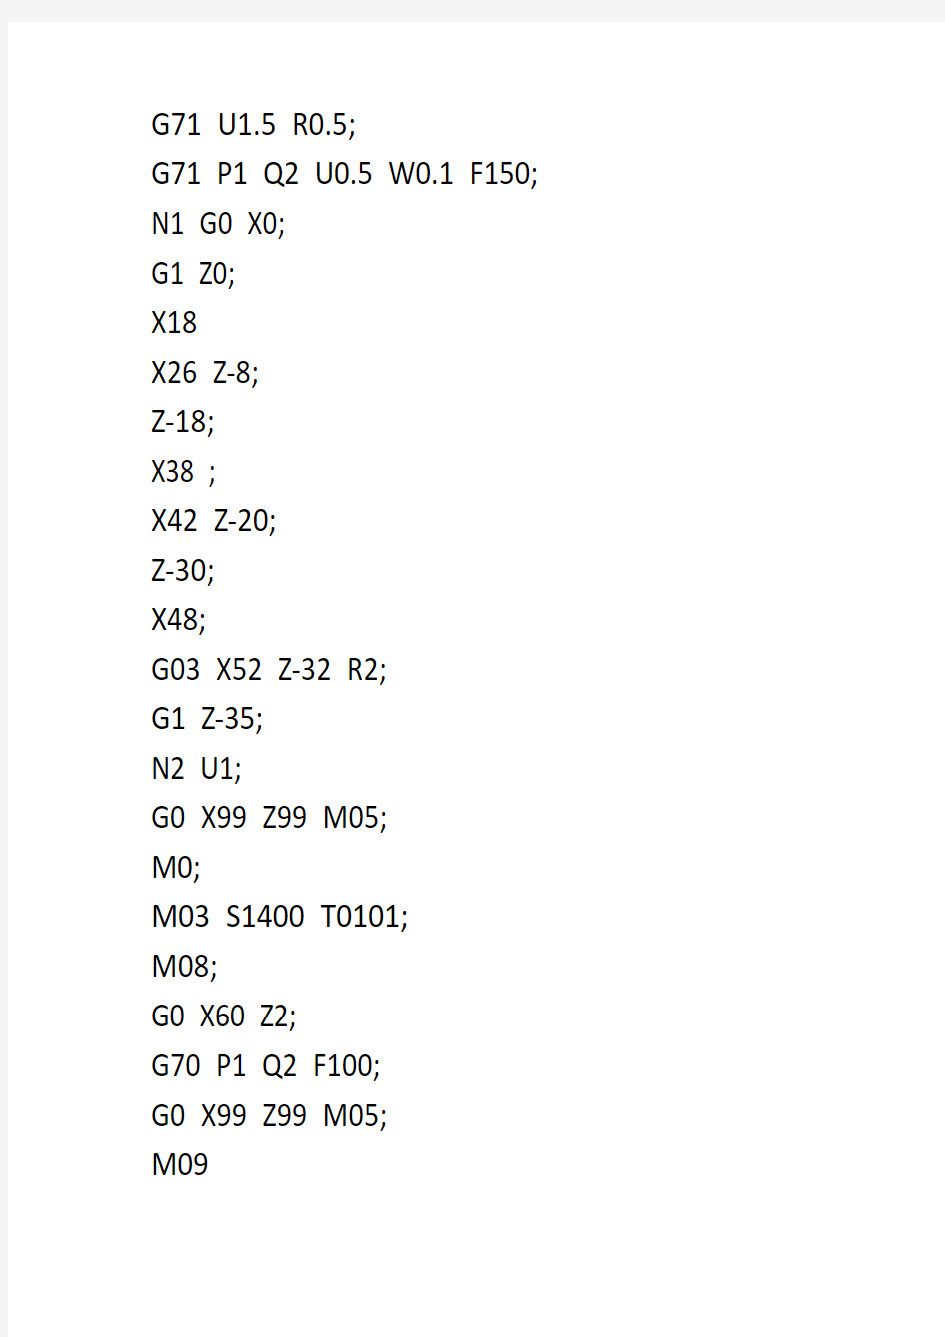 数控车G71,G70指令的编程加工实例